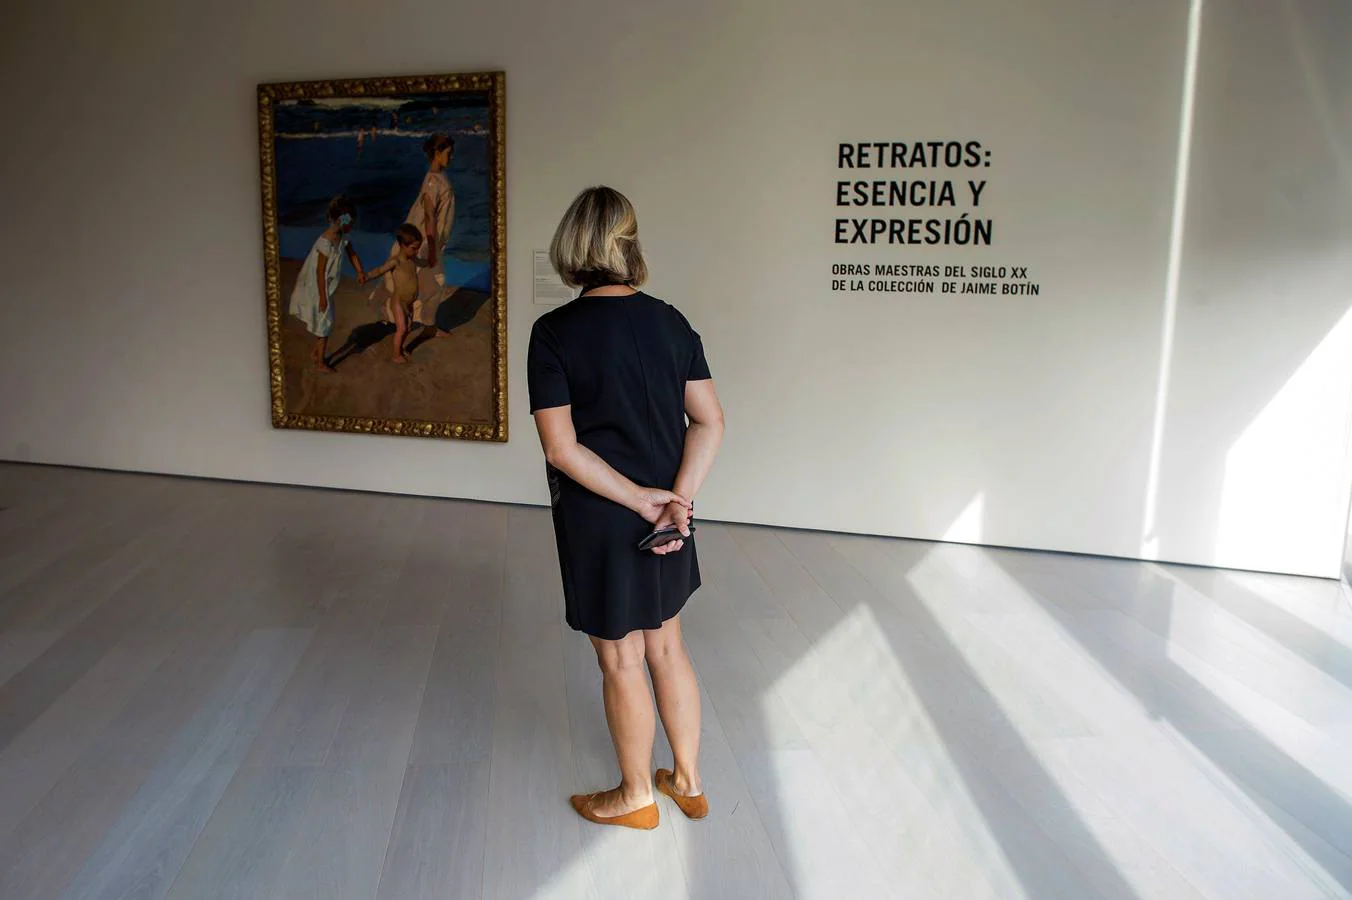 Una mujer observa una obra de Joaquín Sorolla, que forma parte de la nueva sala "Retratos: Esencia y Expresión", cedidas por el Patrono de la Fundación Botín, Jaime Botín, de forma permanente, hoy en el Centro Botín en Santander.